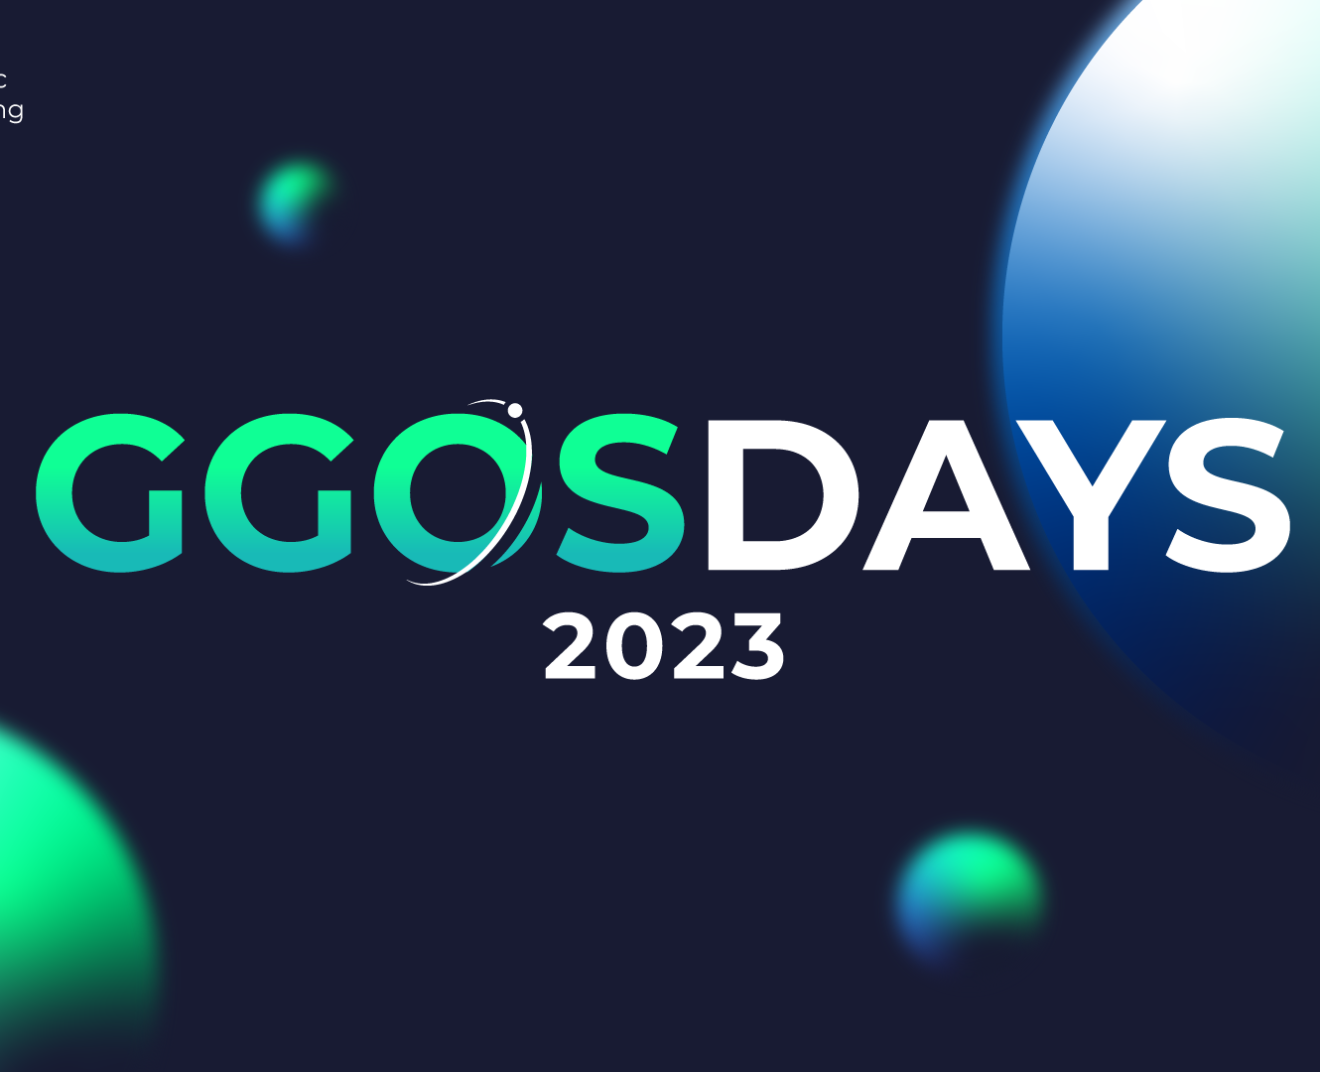 GGOS Days 2023